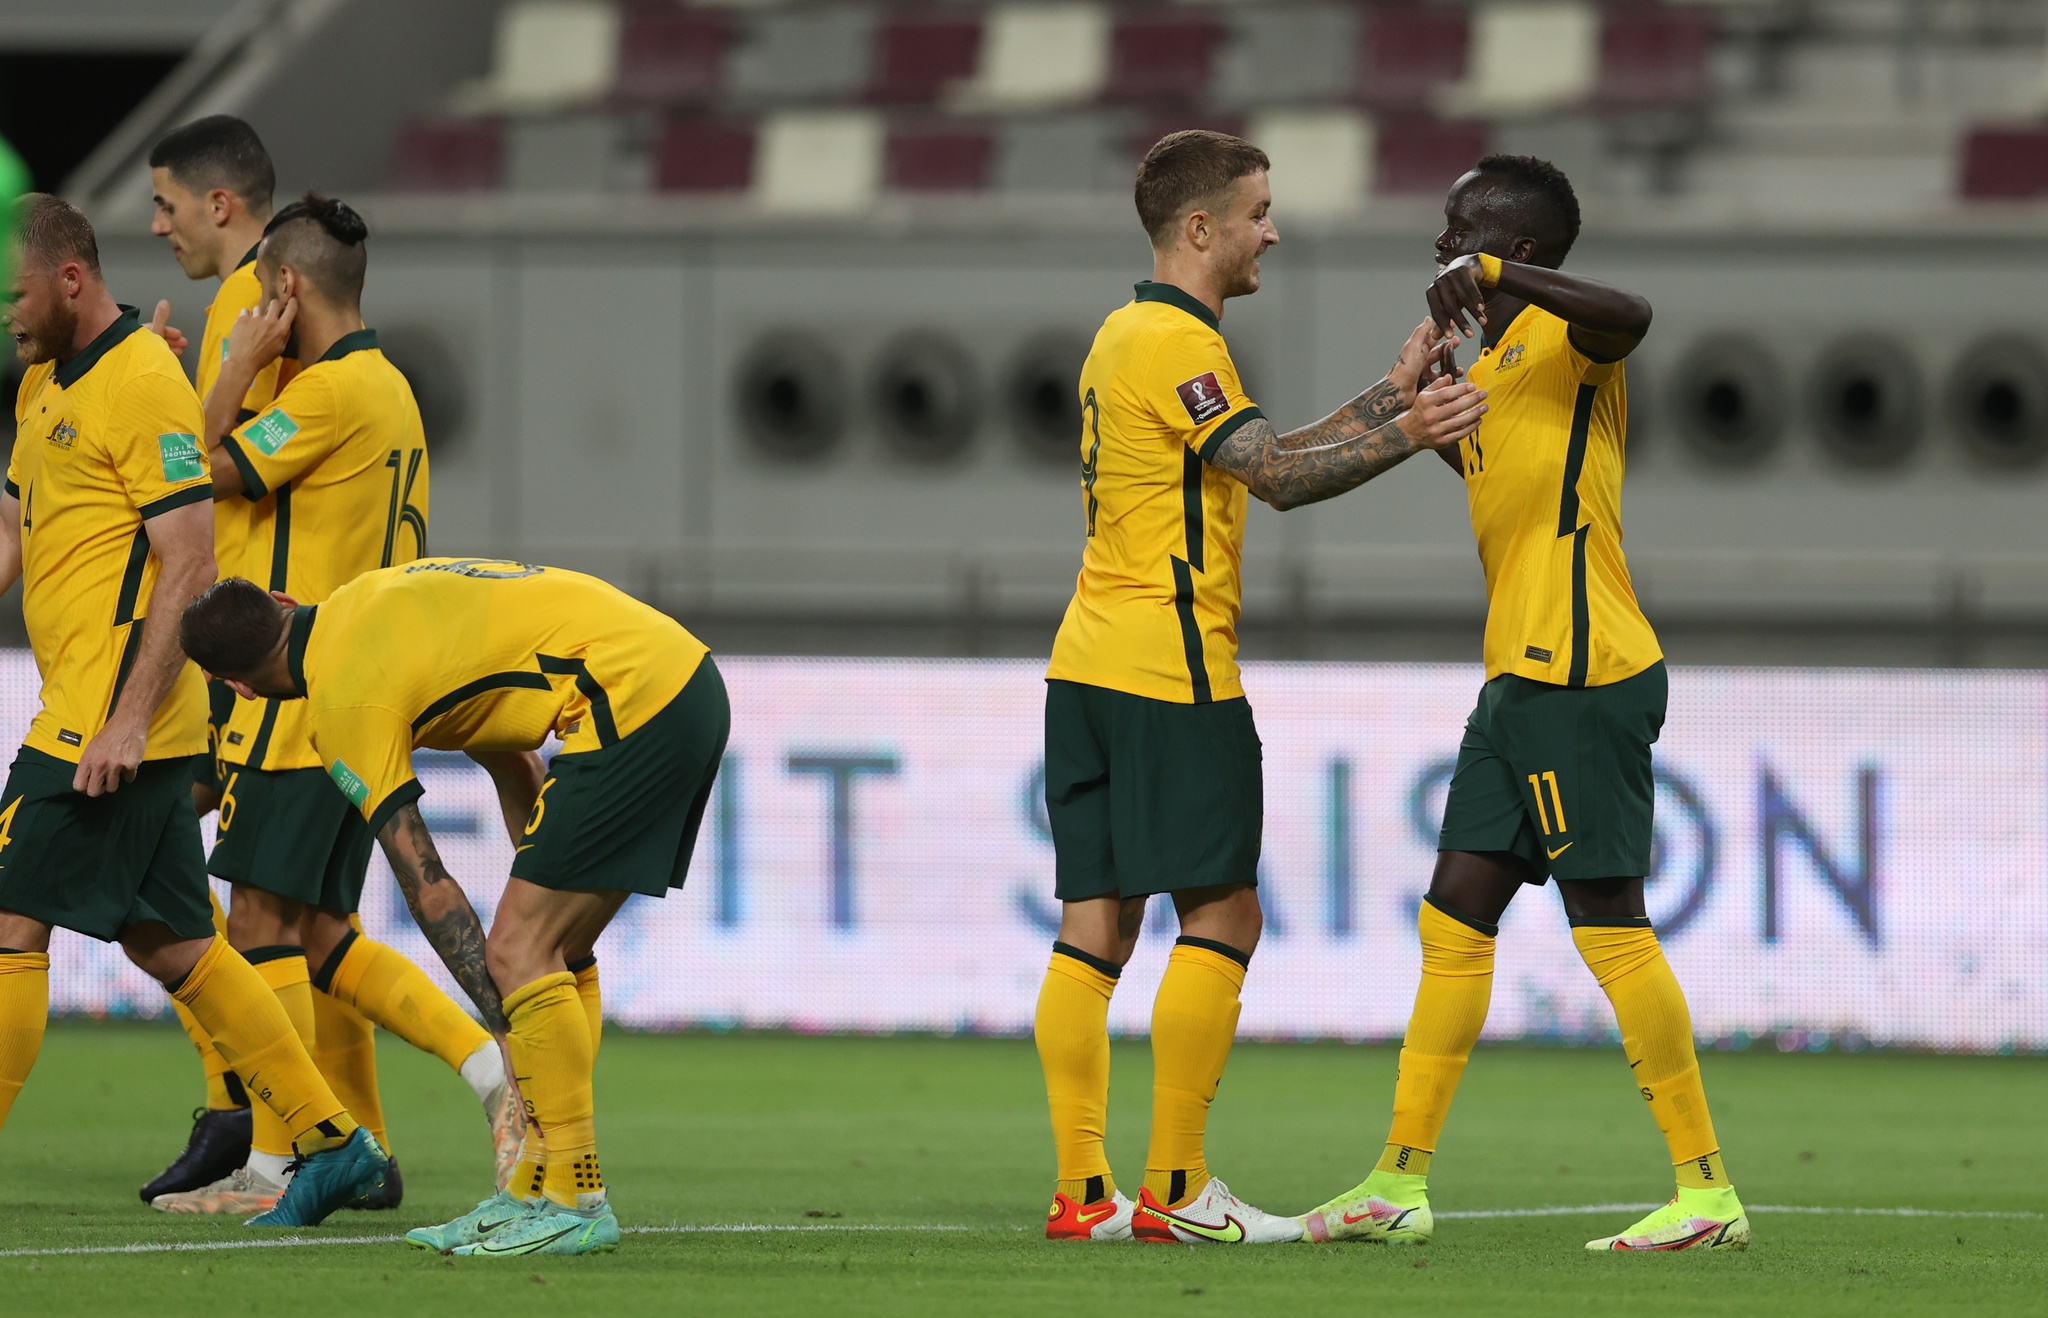 Cầu thủ Trent Sainsbury khẳng định đội tuyển Australia chưa chơi đúng thực lực trong trận đấu gặp Việt Nam